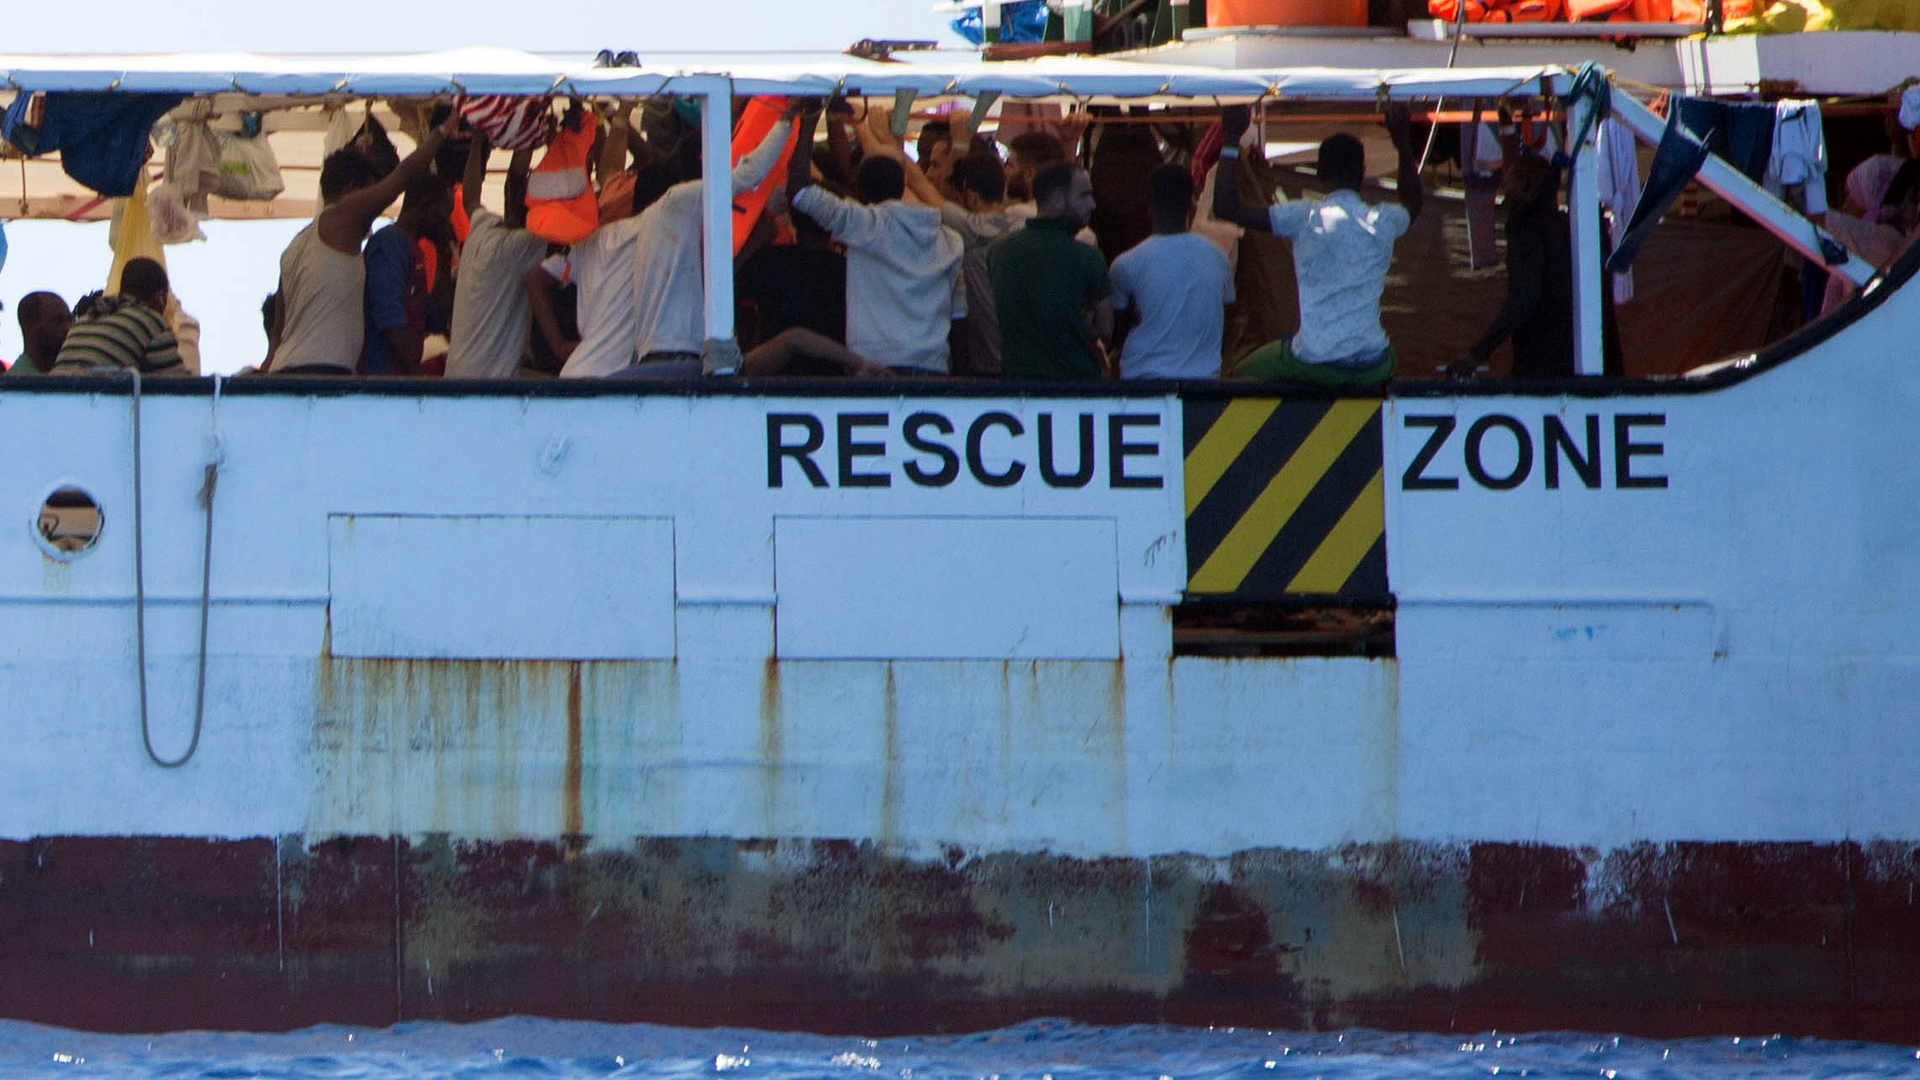 Aus dem Meer gerettete Migranten stehen auf dem Deck des Rettungsschiffes "Open Arms" der Hilfsorganisation Proactiva Open Arms, an der Bordwand steht der Schriftzug "Rescue Zone" (Rettungszone) (Archivbild). | dpa